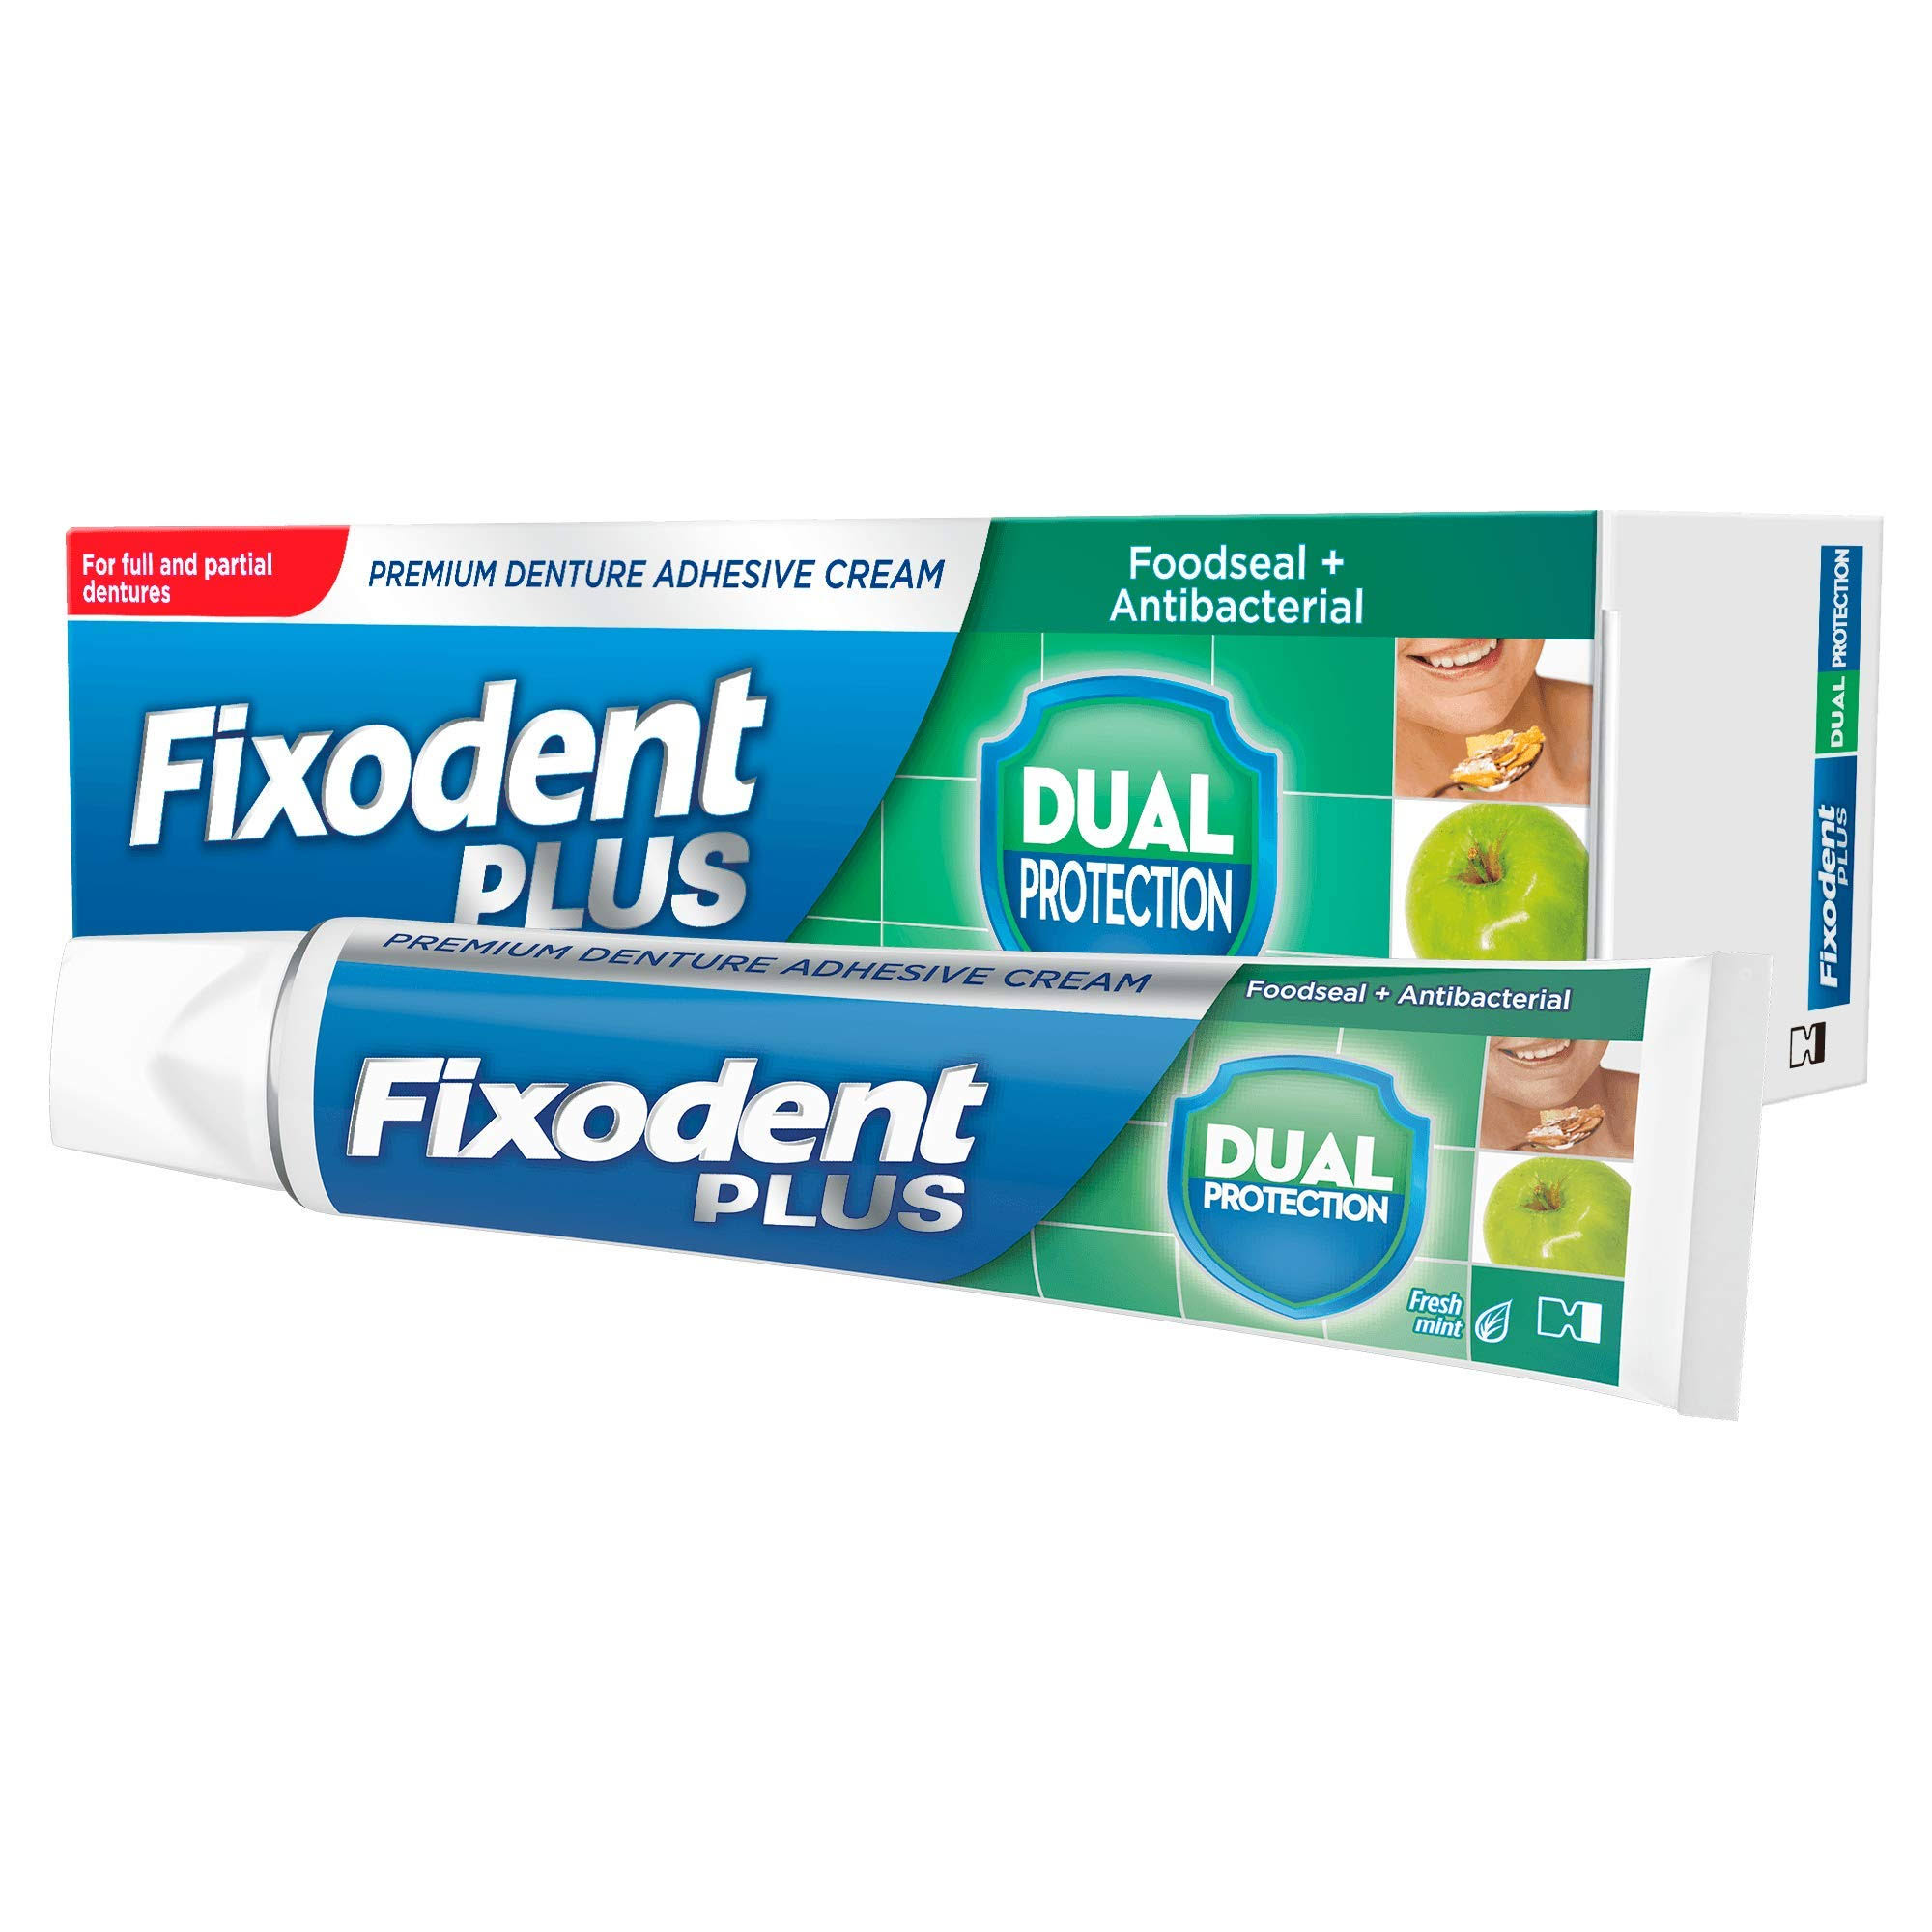 Fixodent Plus Dual Protection Premium Denture Adhesive - 40g